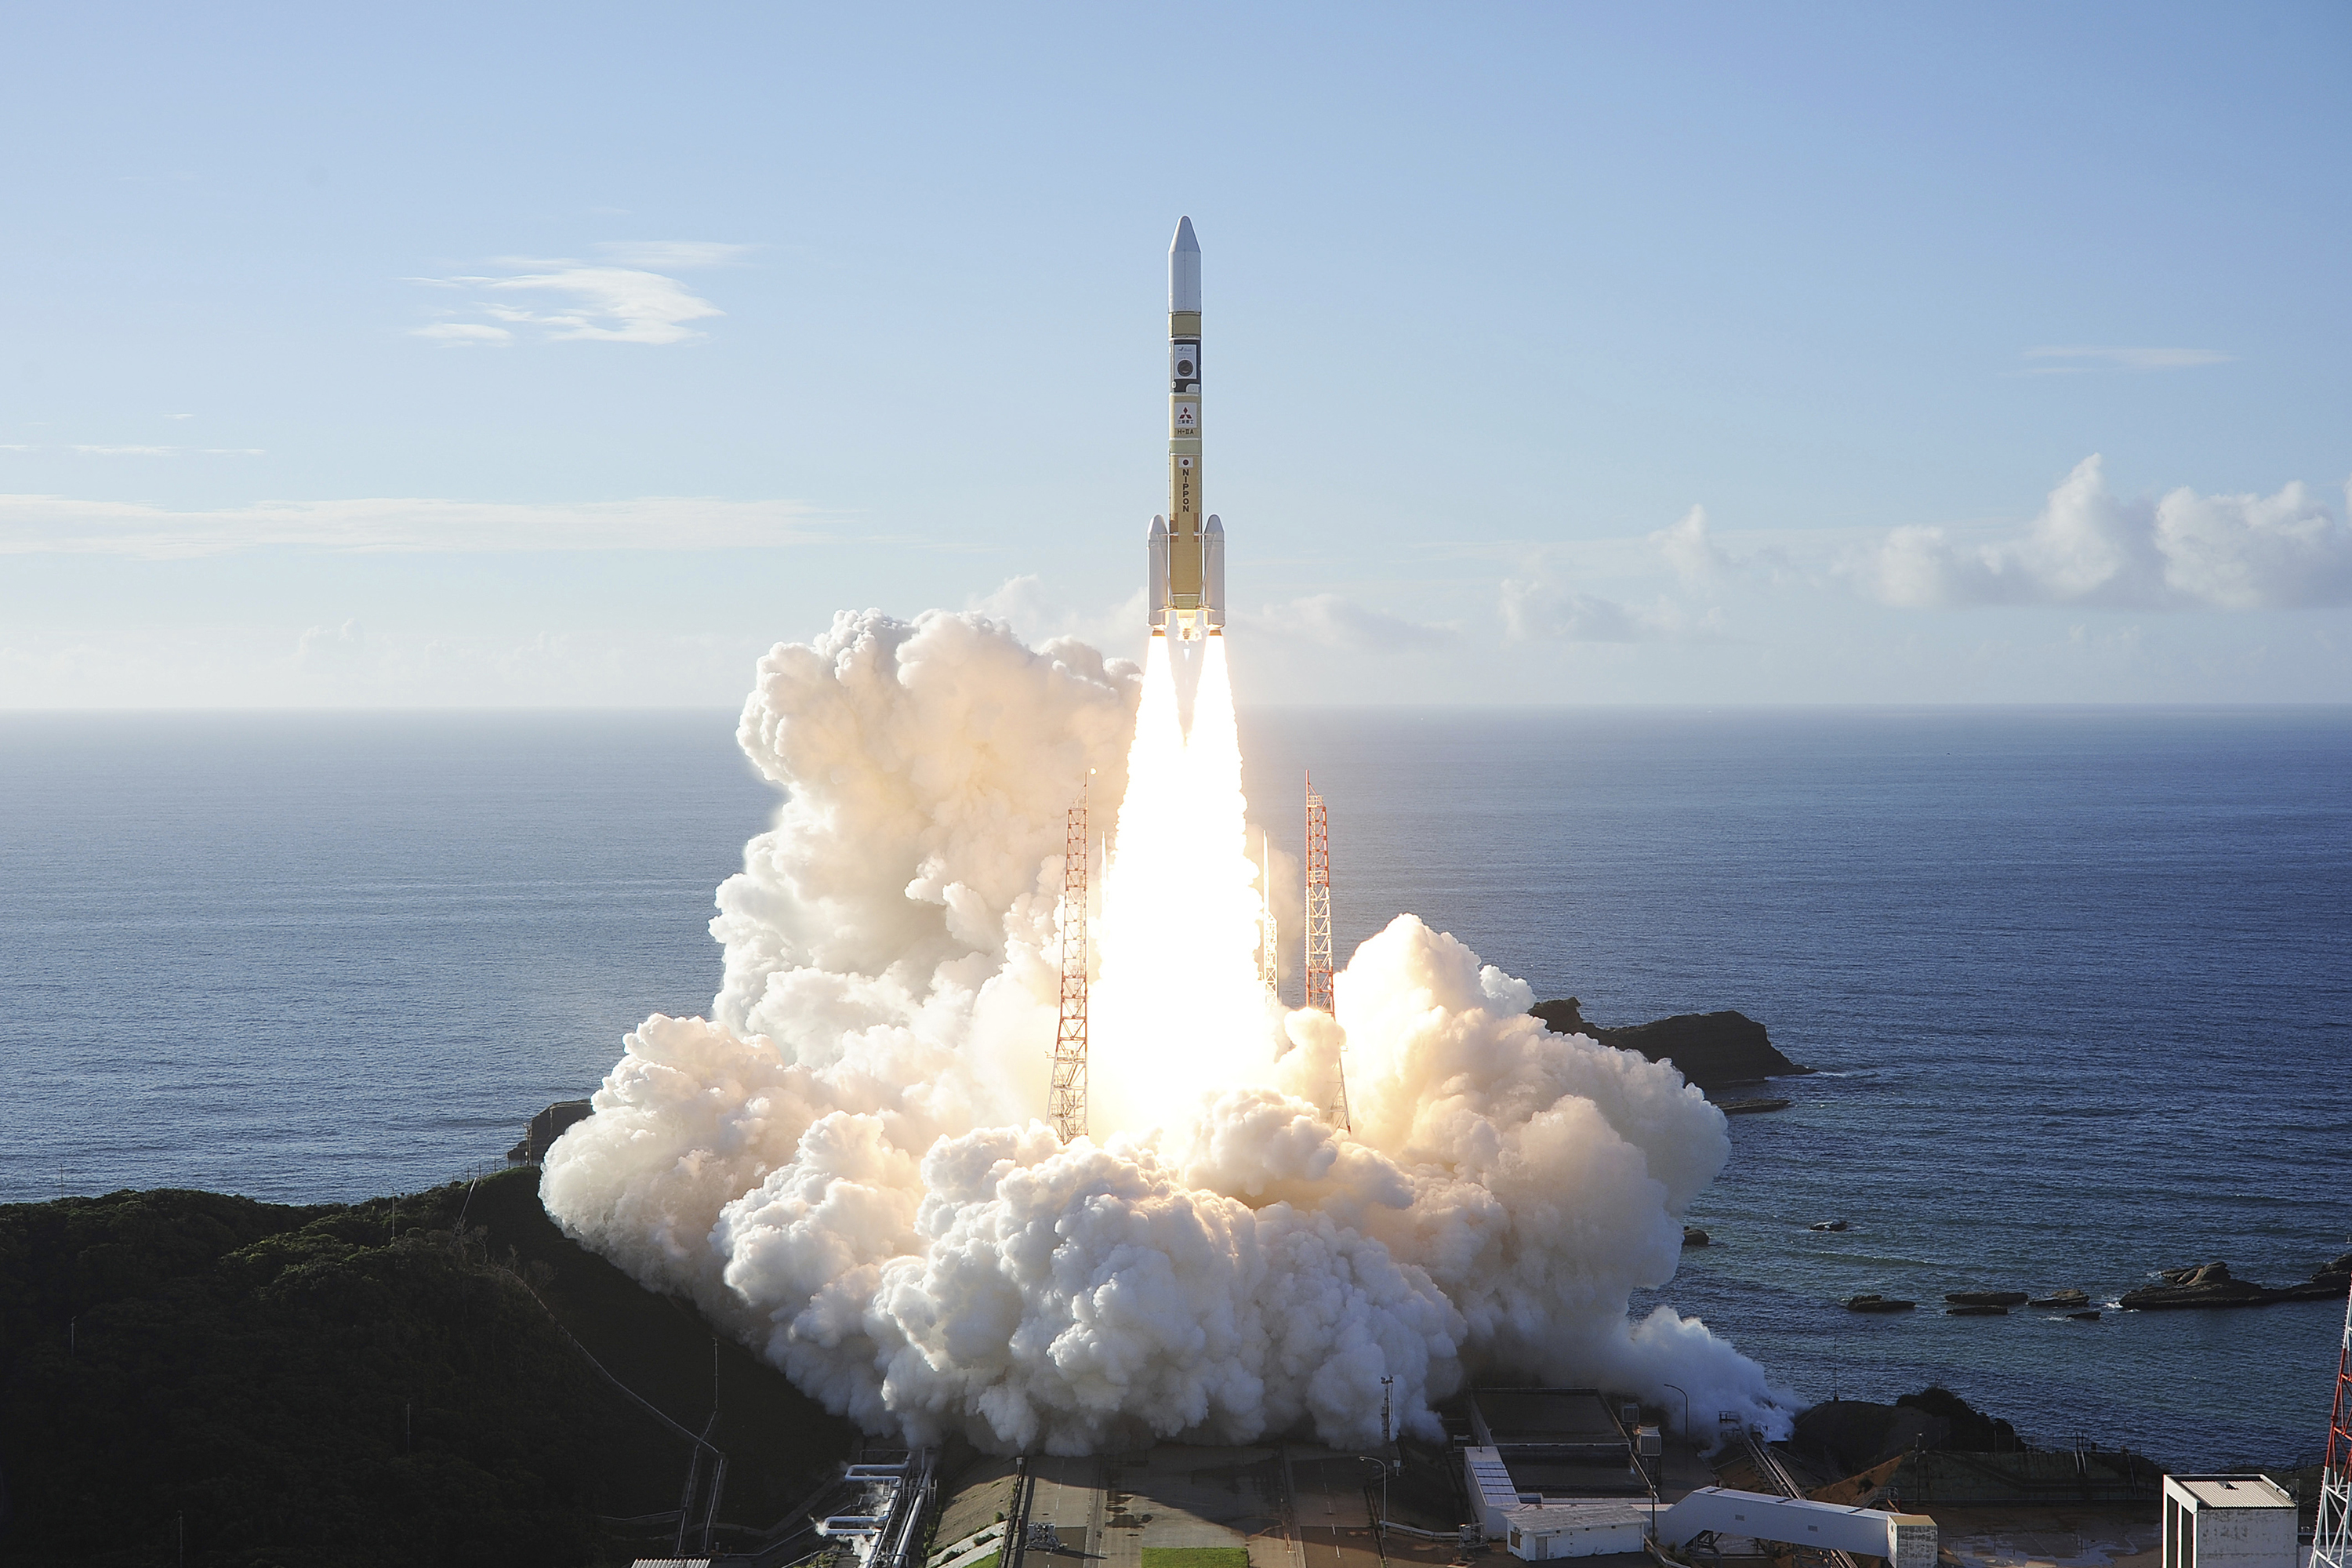 Một tên lửa H-IIA với tàu quỹ đạo Hỏa tinh của Các Tiểu vương quốc Ả Rập Thống nhất cất cánh từ Trung tâm Vũ trụ Tanegashima ở Kagoshima, miền nam Nhật Bản, vào ngày 20/7/2020. (Ảnh MHI qua AP)